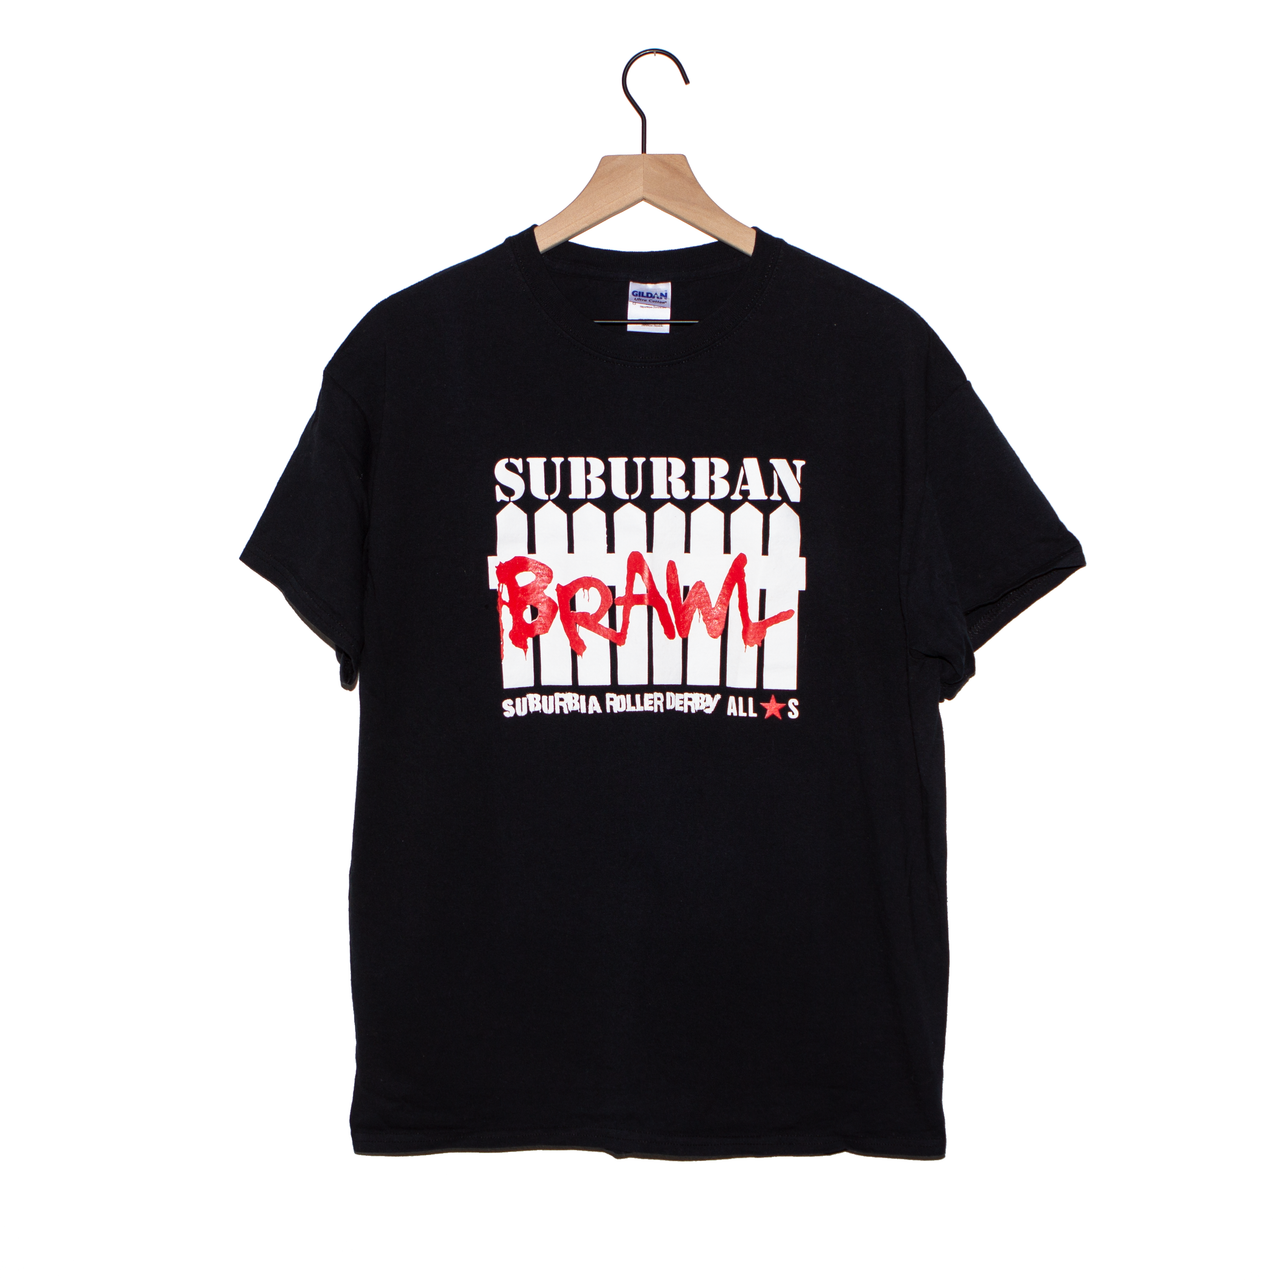 Suburban Brawl Shirt